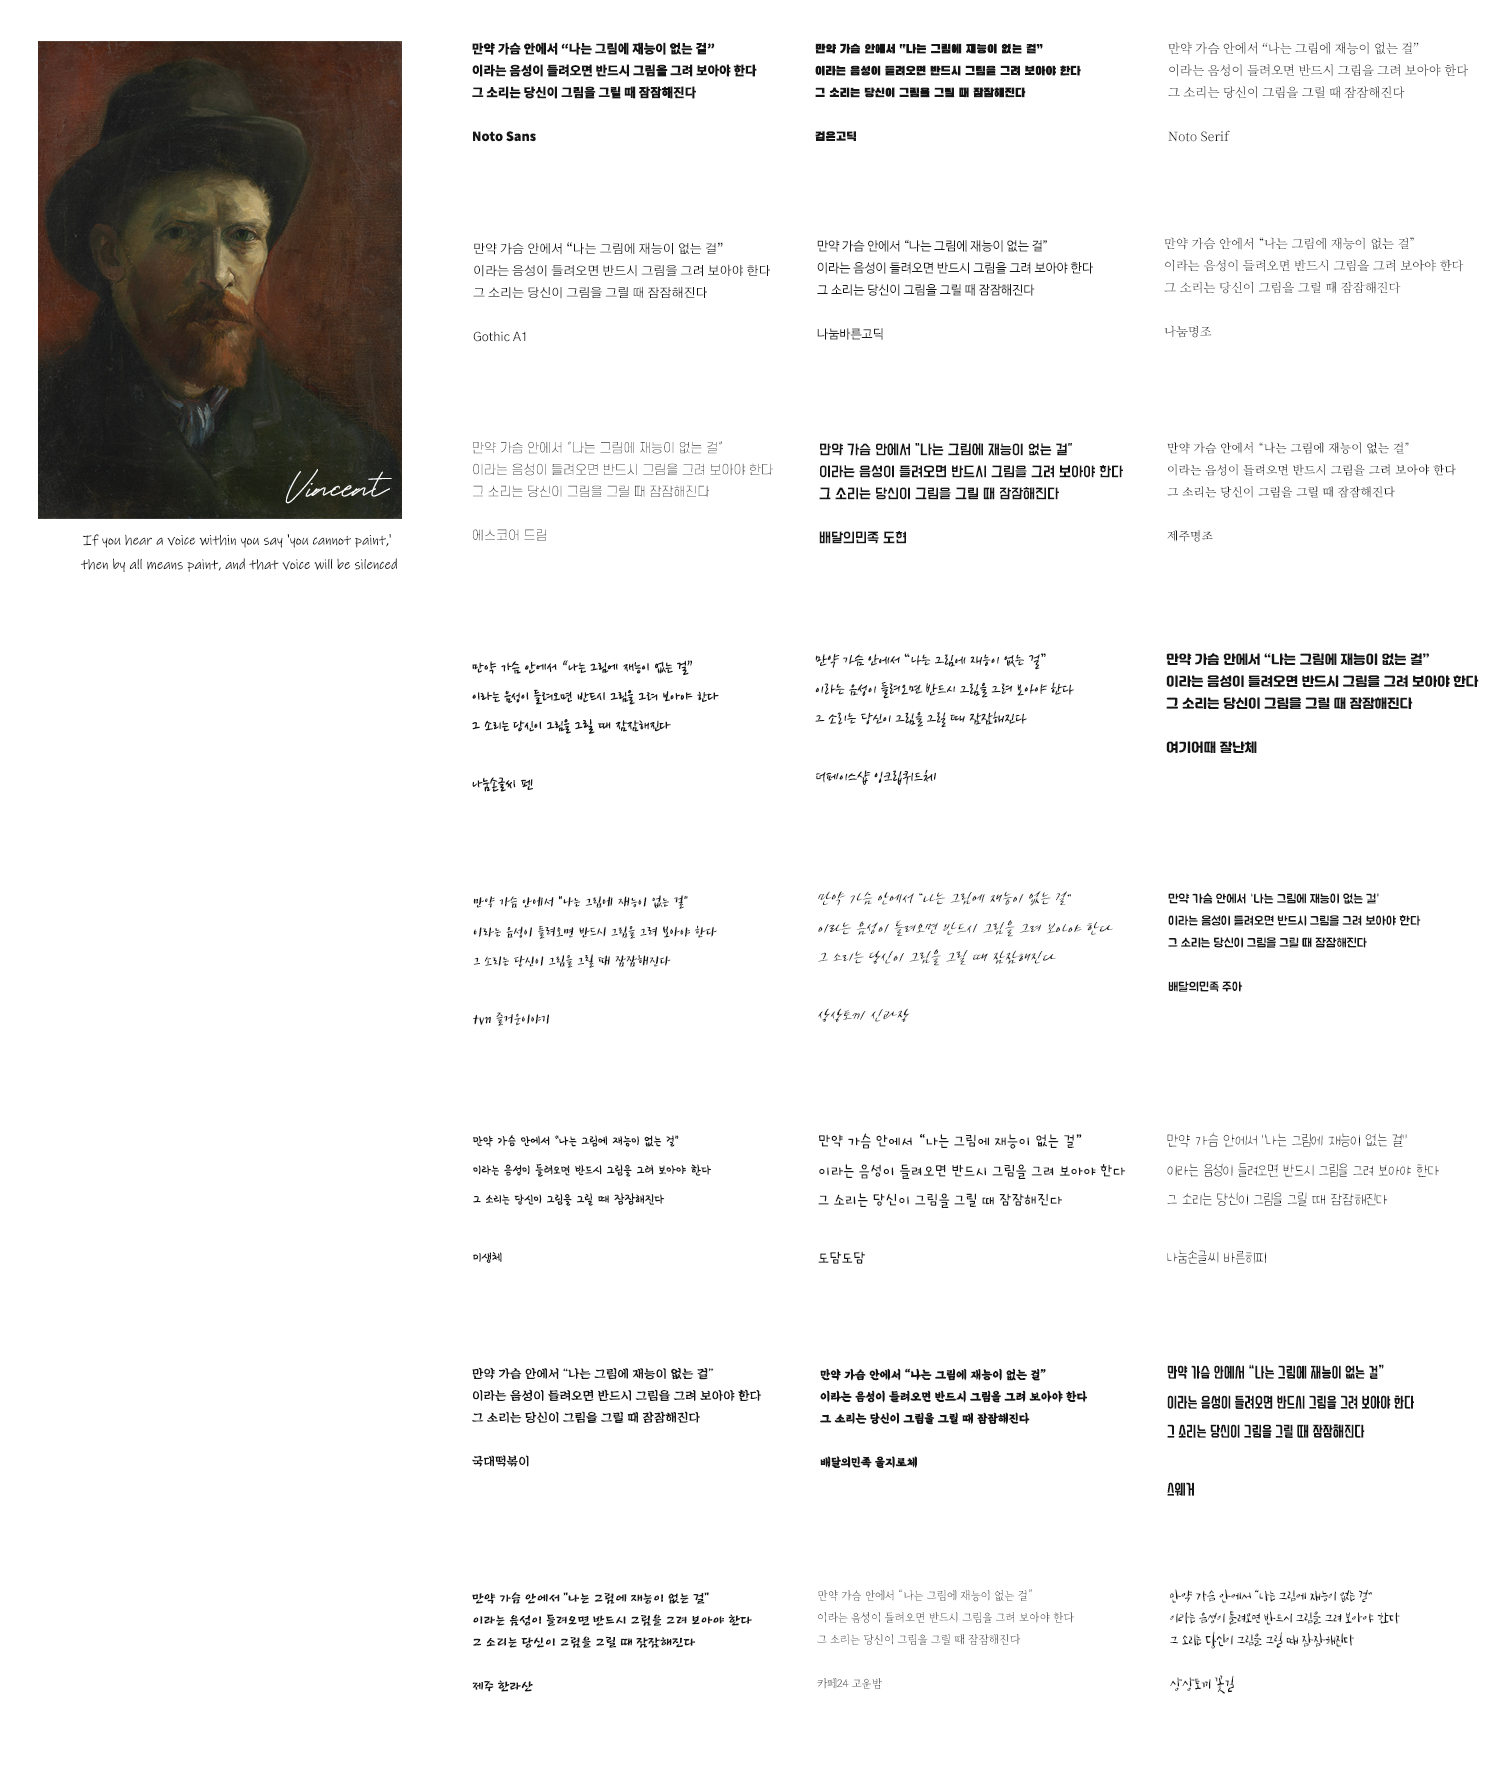 화가 빈센트의 말을 인용한 글자 사용 폰트 테스트 모습